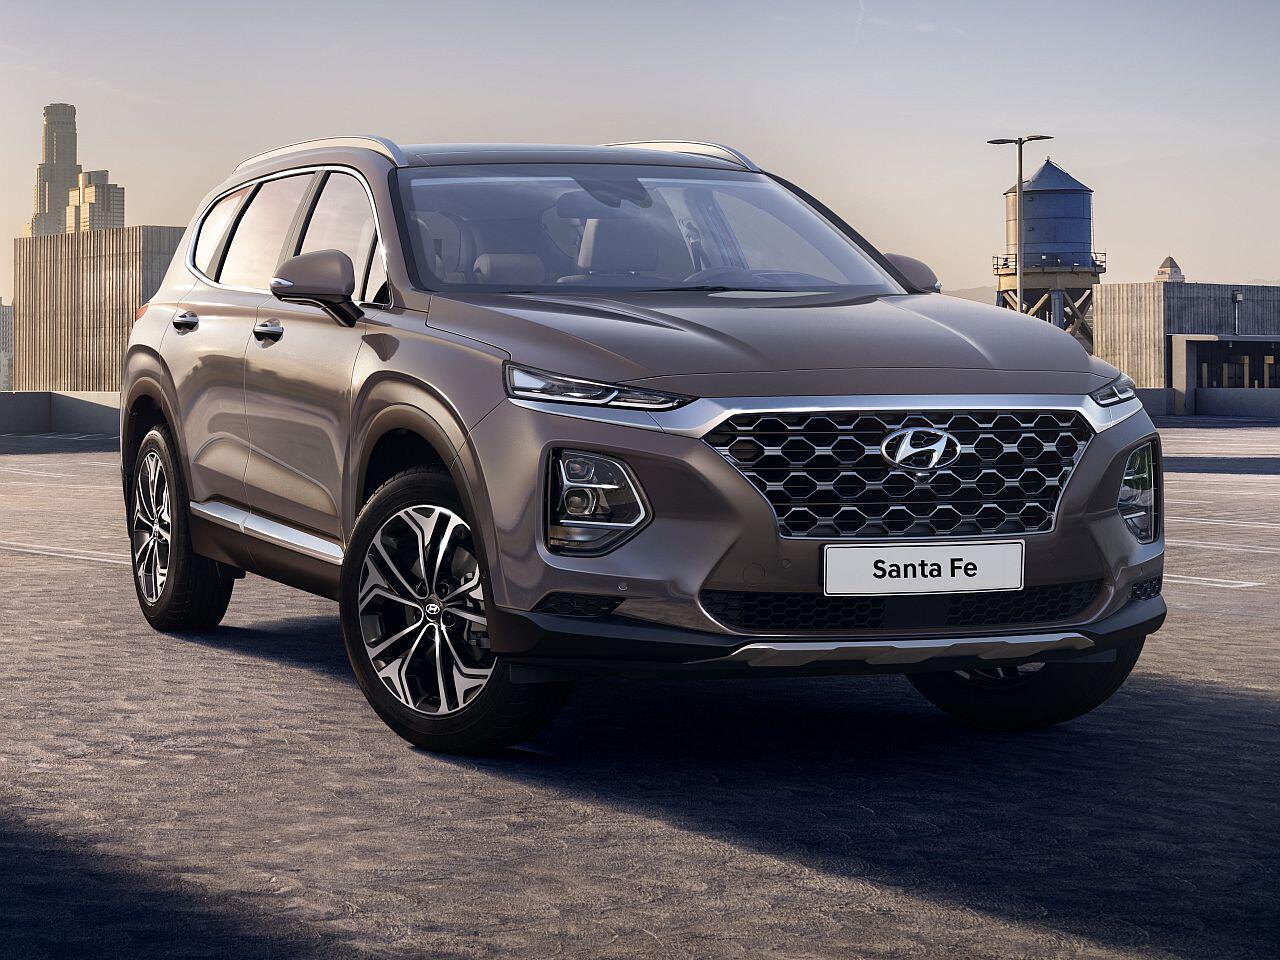 SUV in Neuauflage: Hyundai zeigt erste Bilder des neuen Santa Fe